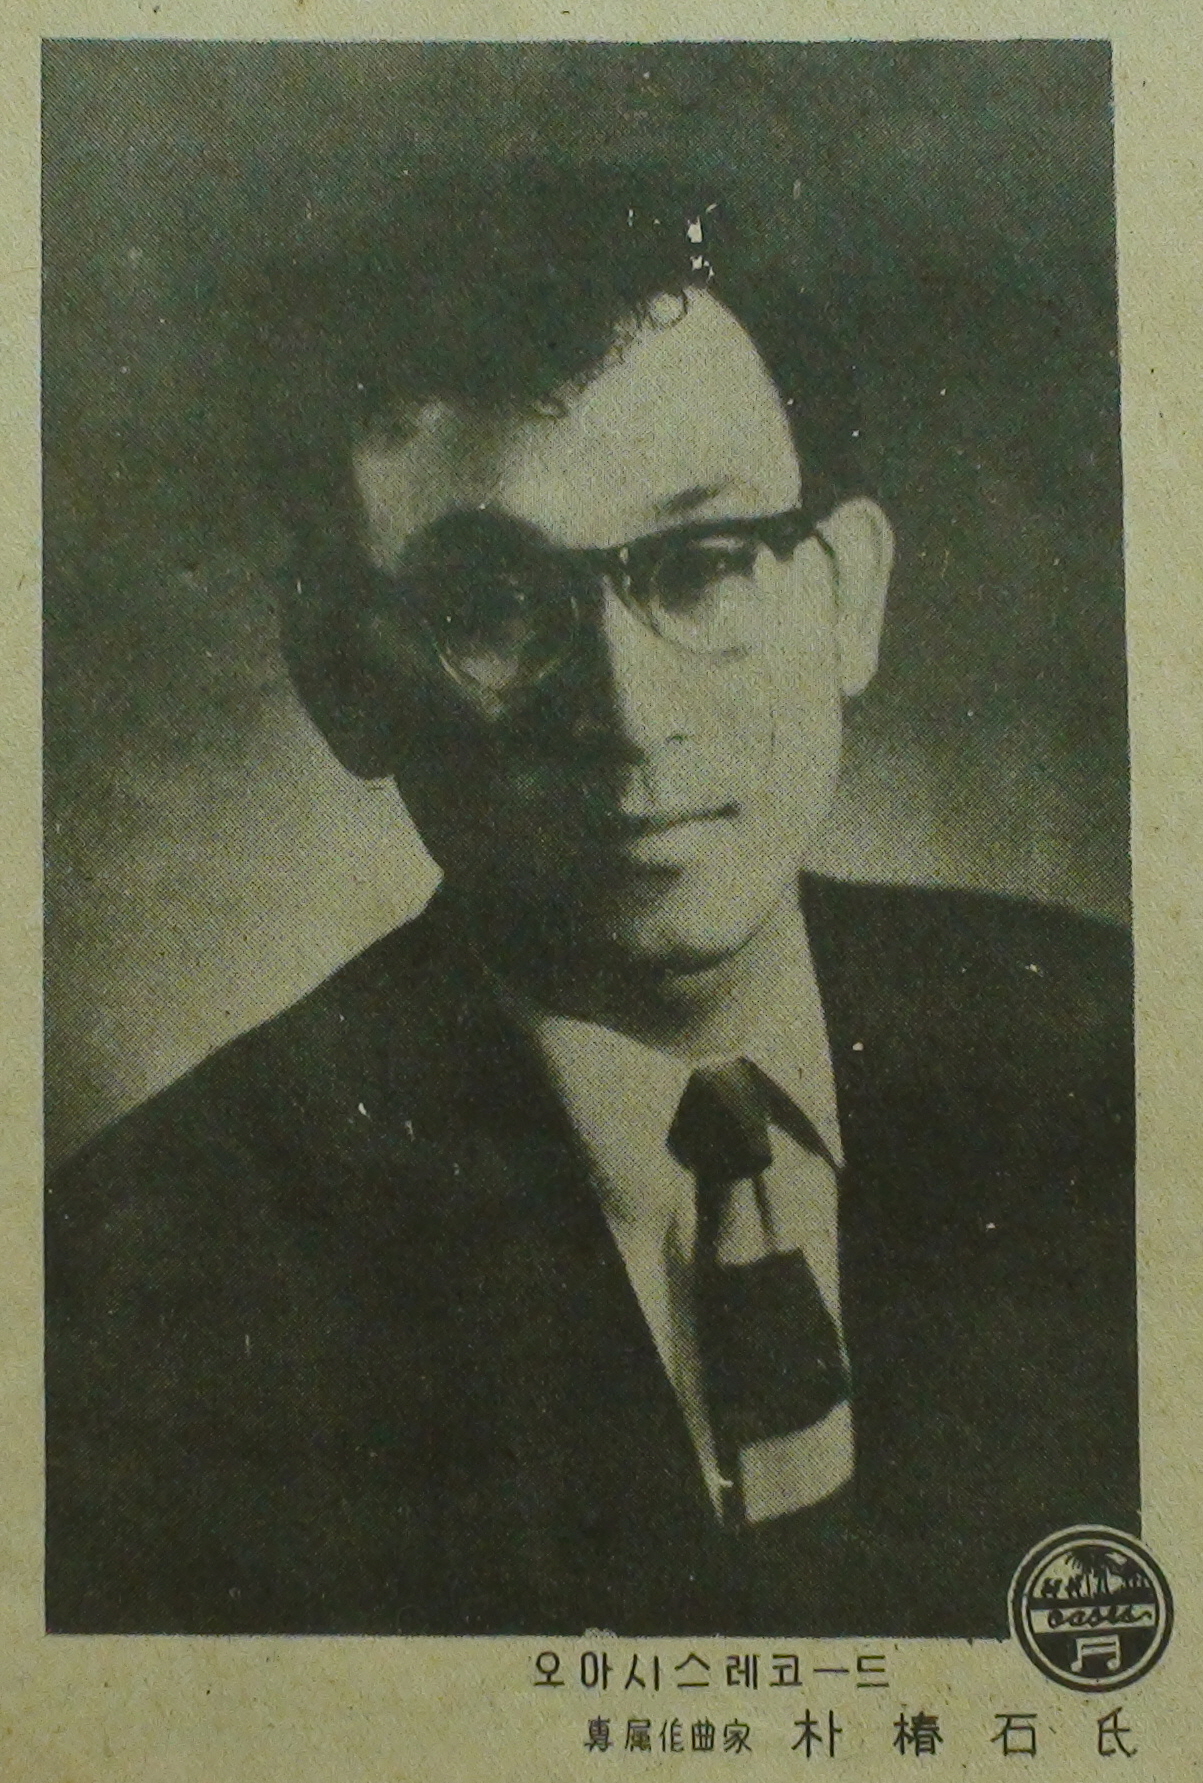  1957년 간행 <박춘석 작곡집>에 실린 박춘석 사진.